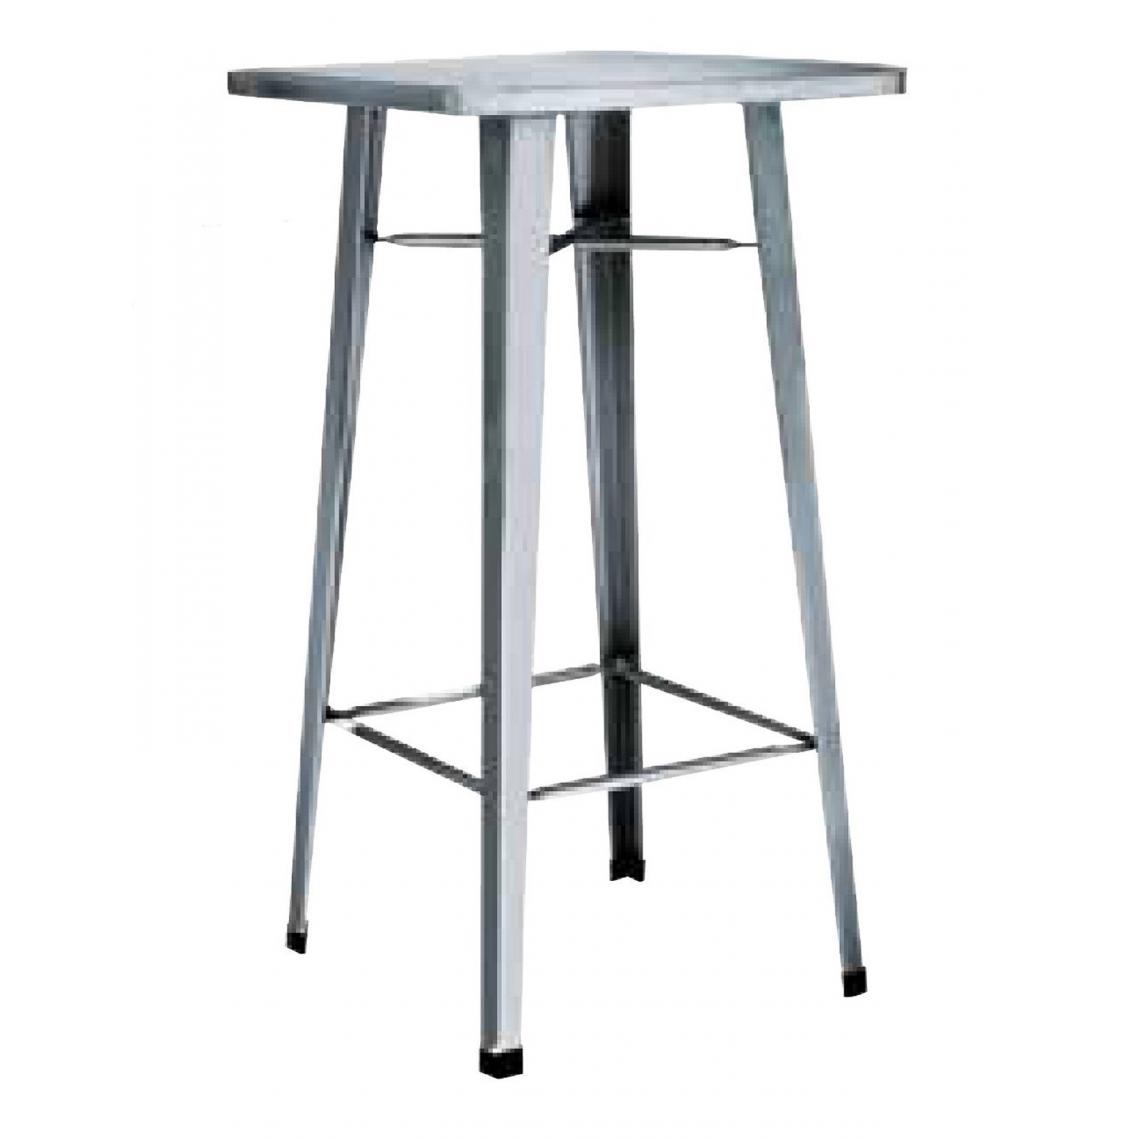 Pegane - Table haute en tôle galvanisée coloris gris - Dim : L.60 x P.60 x H.108 cm -A USAGE PROFESSIONNEL - PEGANE - - Tables de jardin